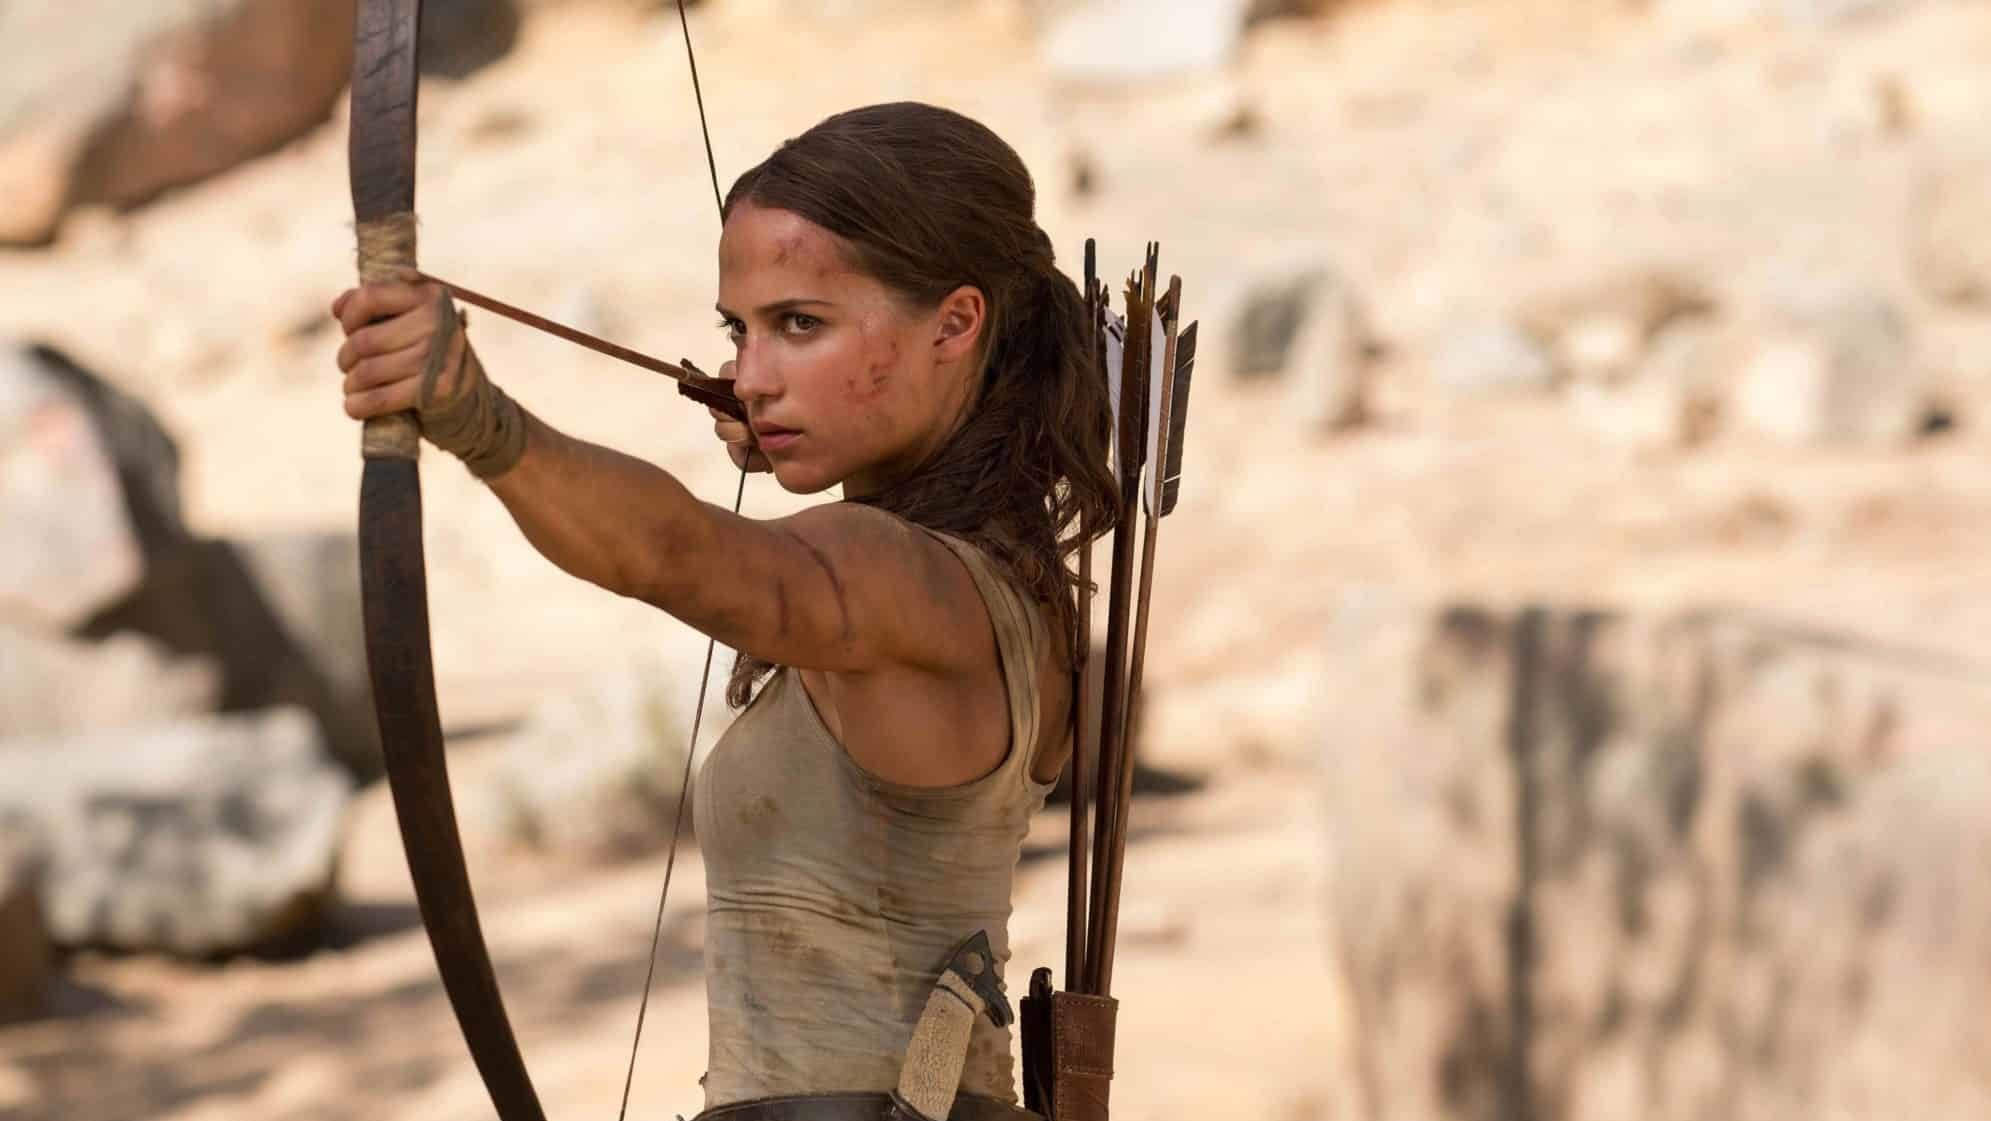 Filme Tomb Raider 2 é cancelado e franquia procura novo estúdio